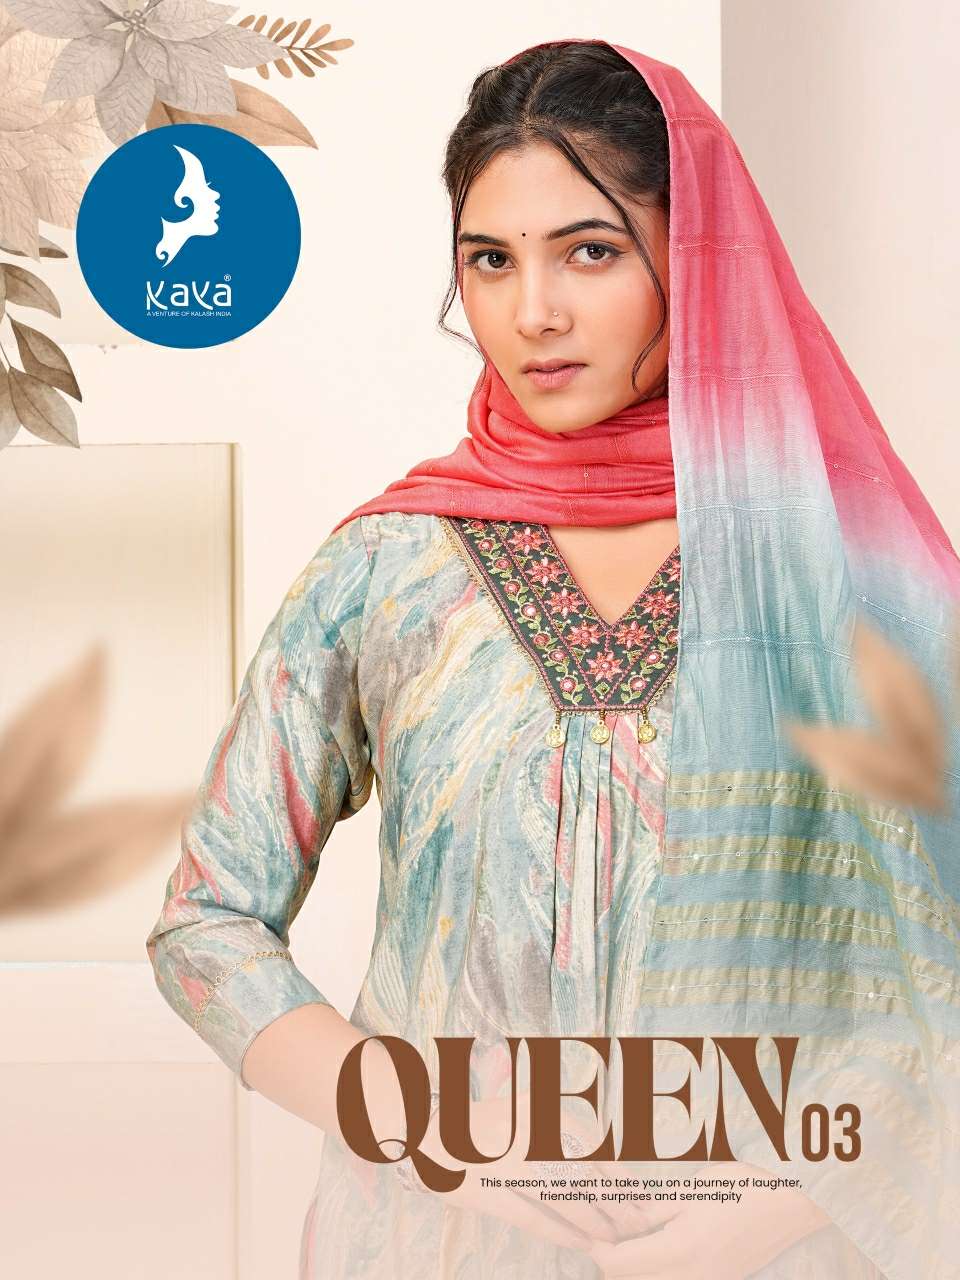 kaya queen vol-3 nayra cut kurtis catalogue wholesale collection surat gujarat 